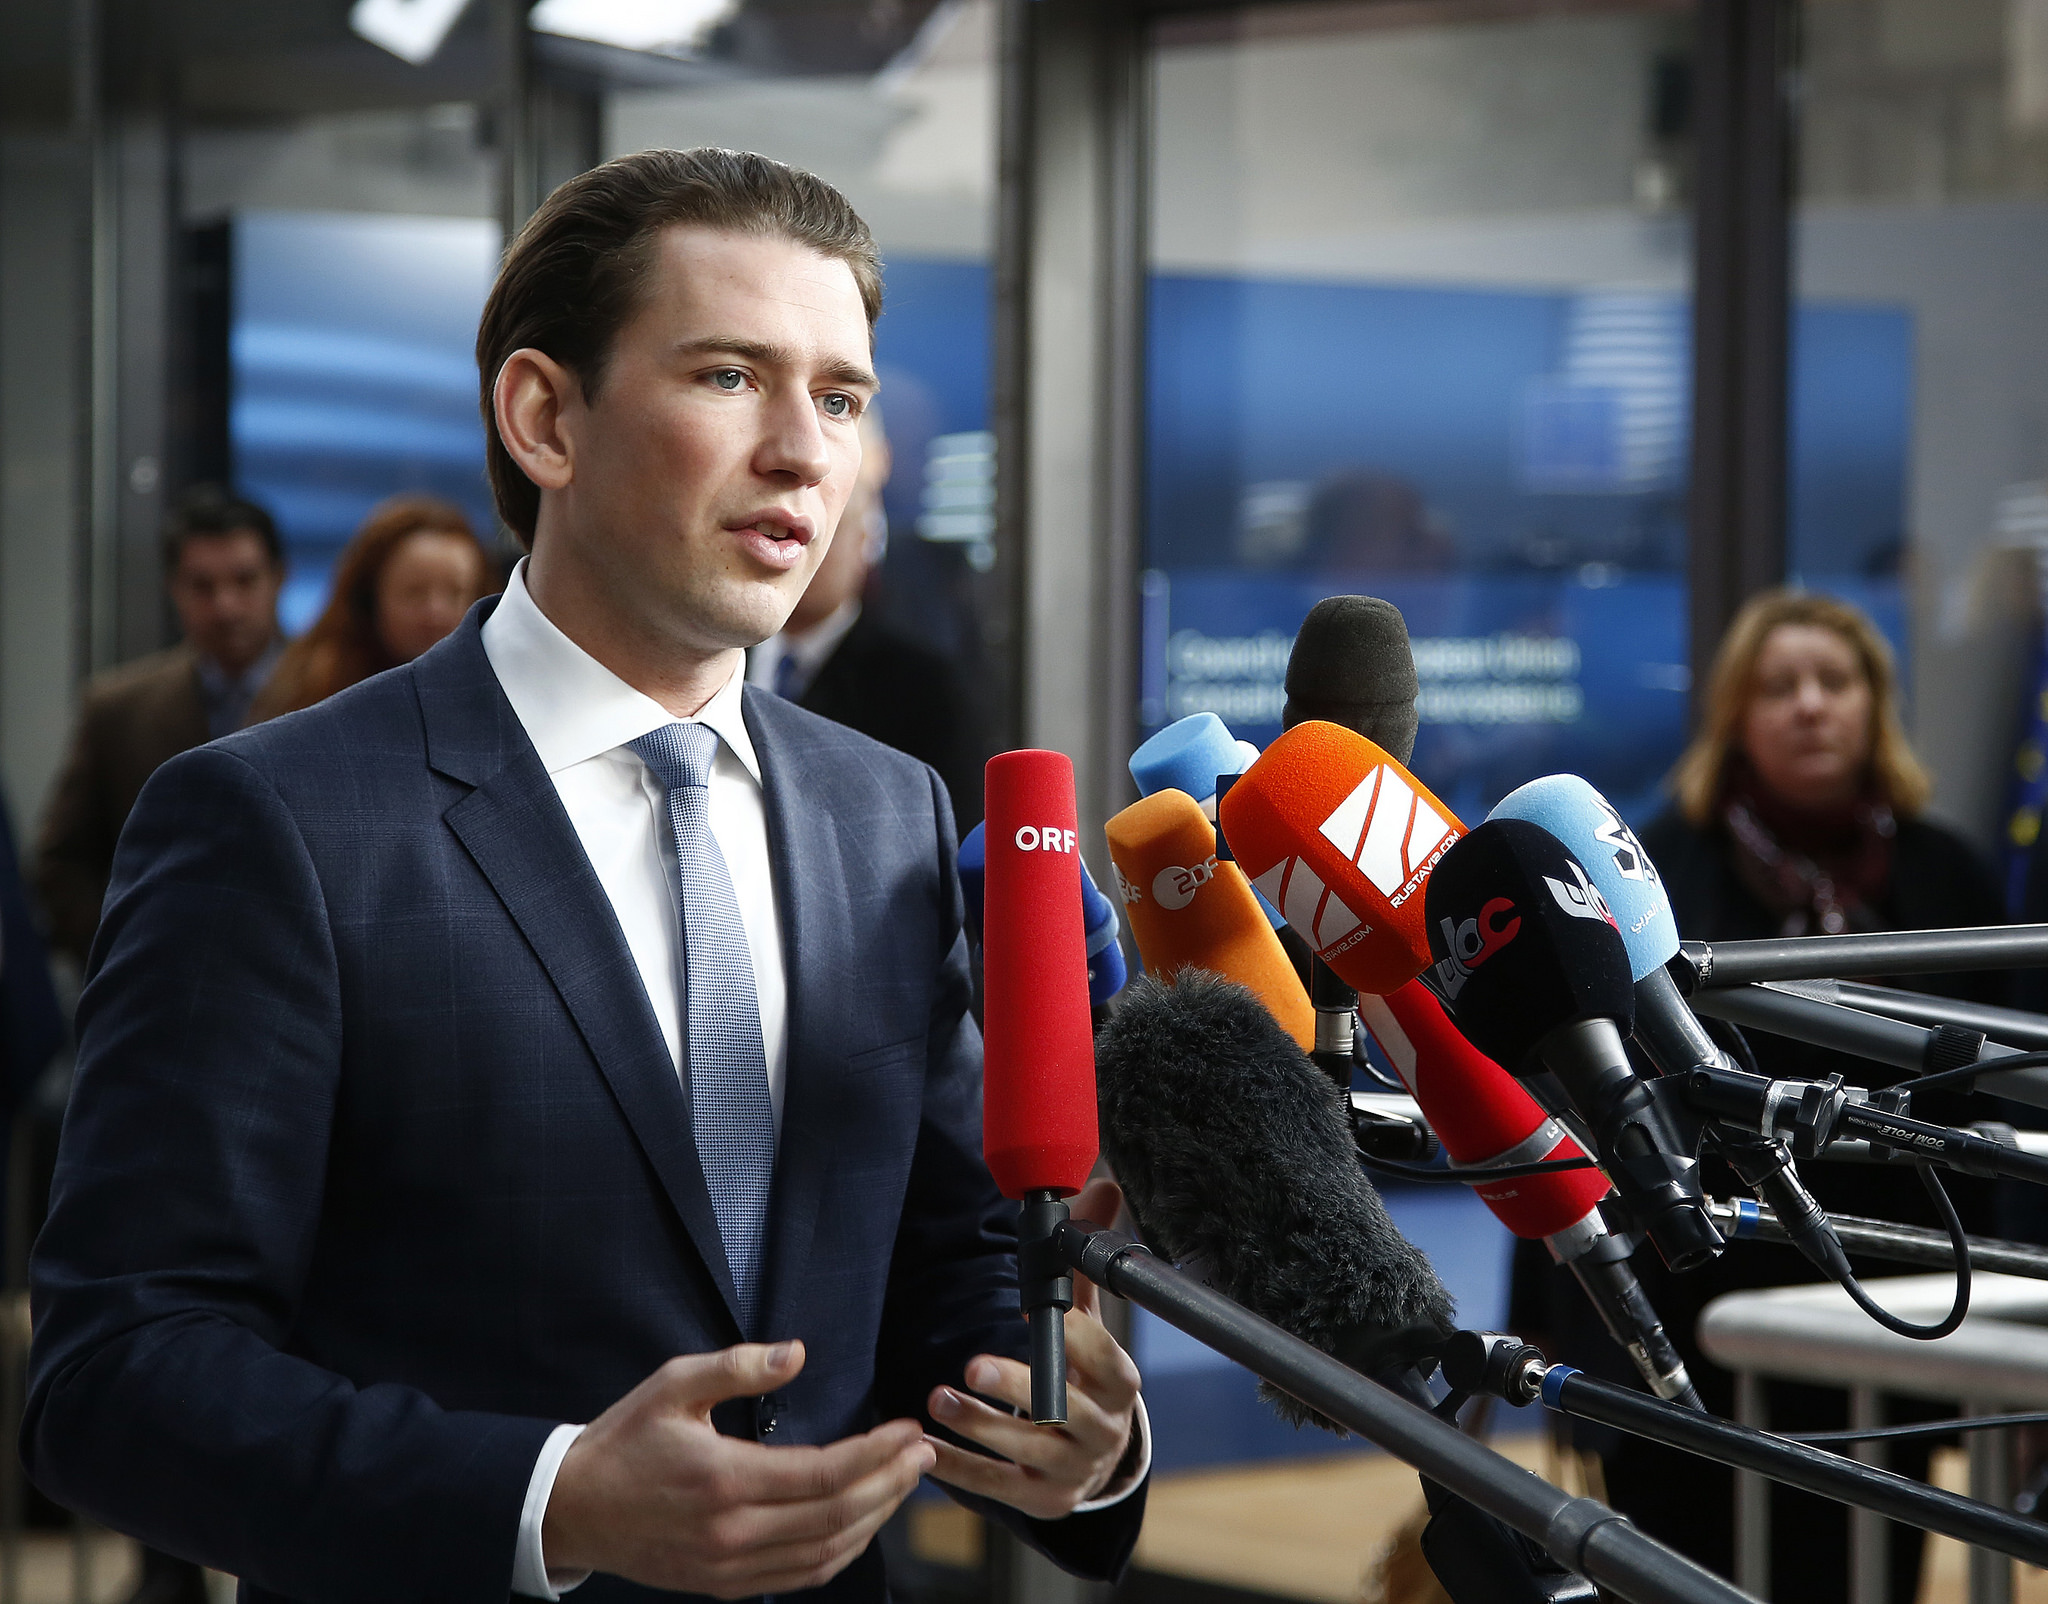 Österreichs Skandalwahlkampf – Justiz ermittelt, Untersuchungsausschuss soll kommen